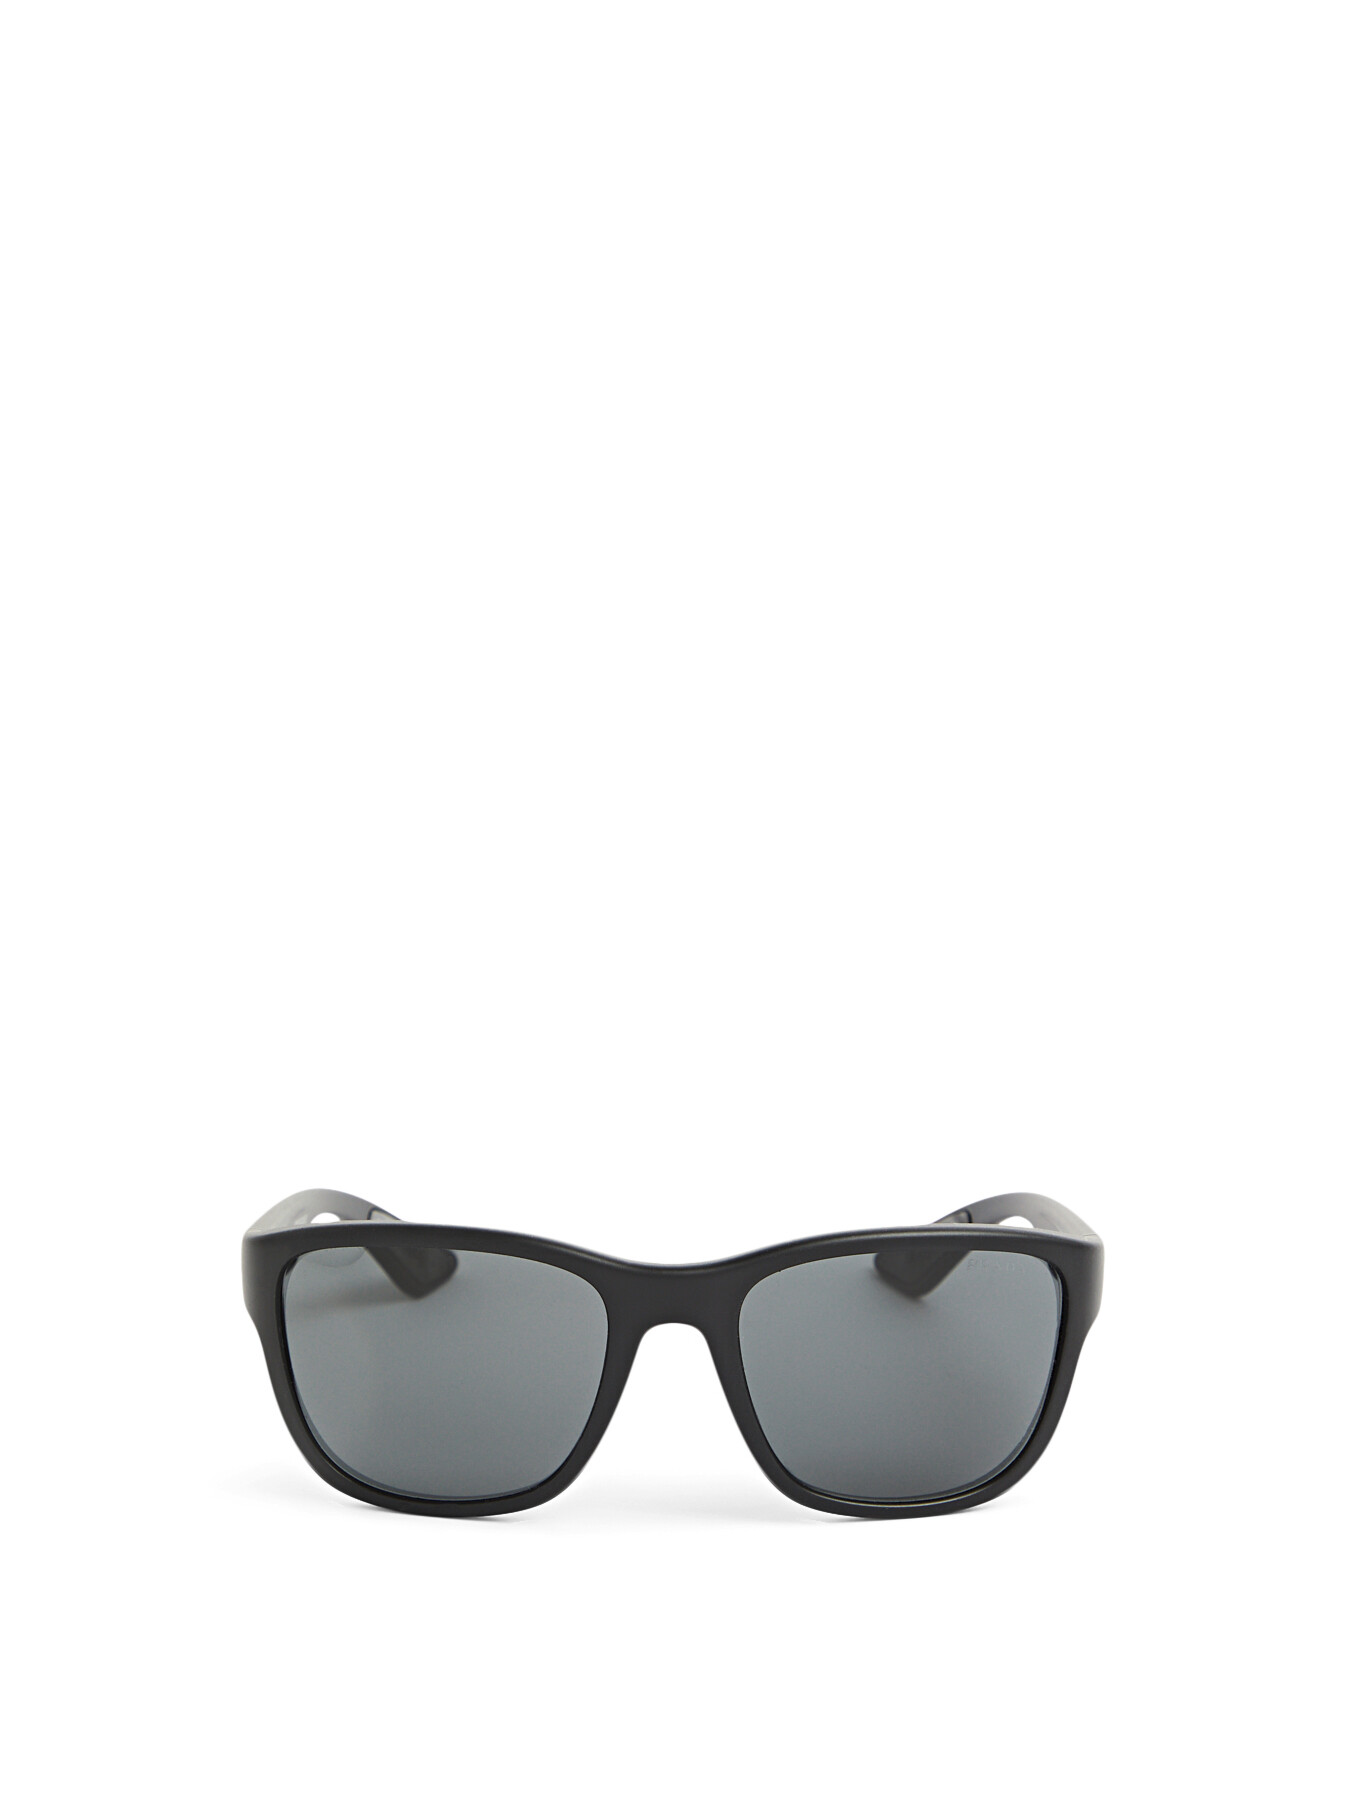 Prada Acetate Rectangular Sunglasses Black